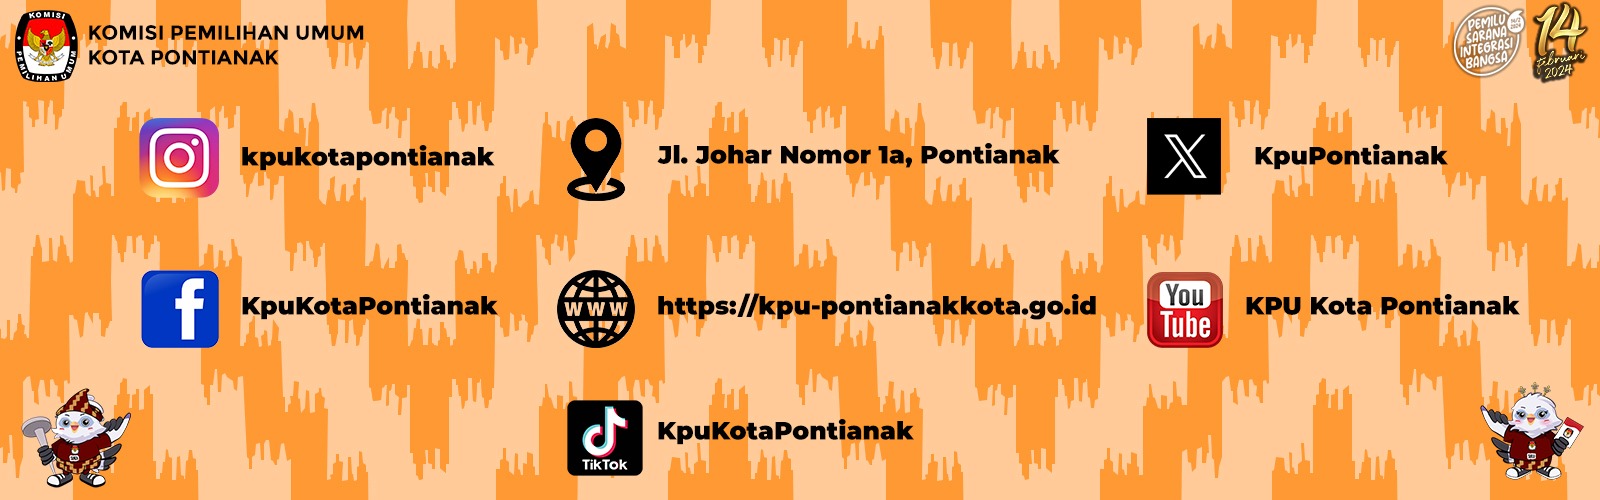 Media Sosial KPU Kota Pontianak